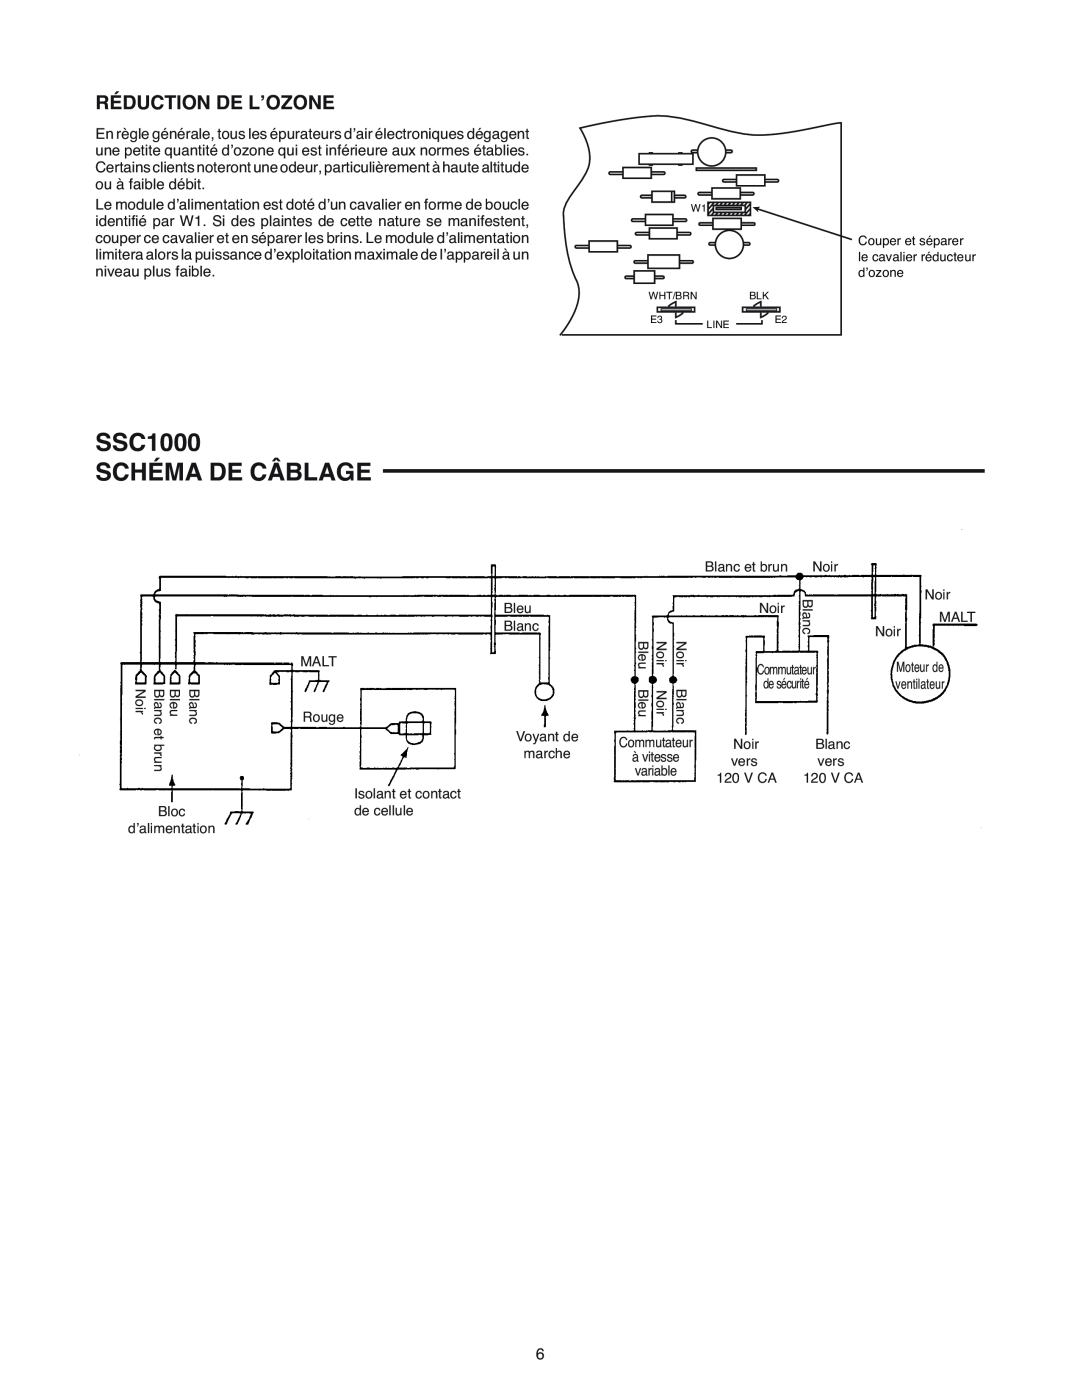 White Rodgers manual SSC1000 SCHÉMA DE CÂBLAGE, Réduction De L’Ozone 